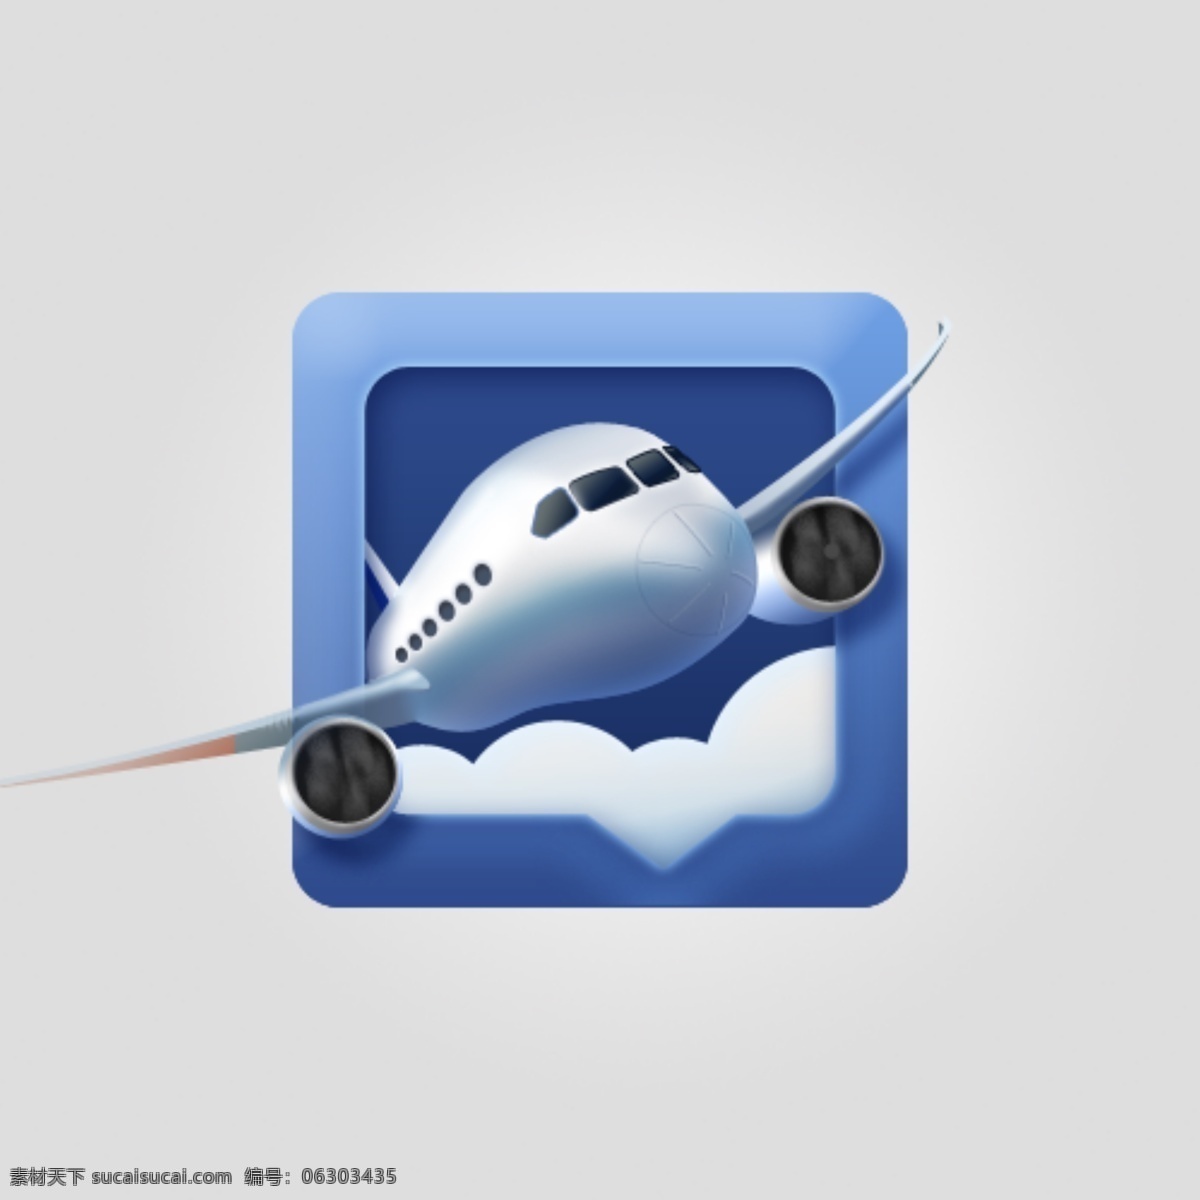 手绘飞机图标 手绘飞机 客机 云 登录 手机 用户界面 ui icon 图标 交互 质感 标识 标志 鼠绘 手绘 钢笔工具 photoshop 合成 海 源文件